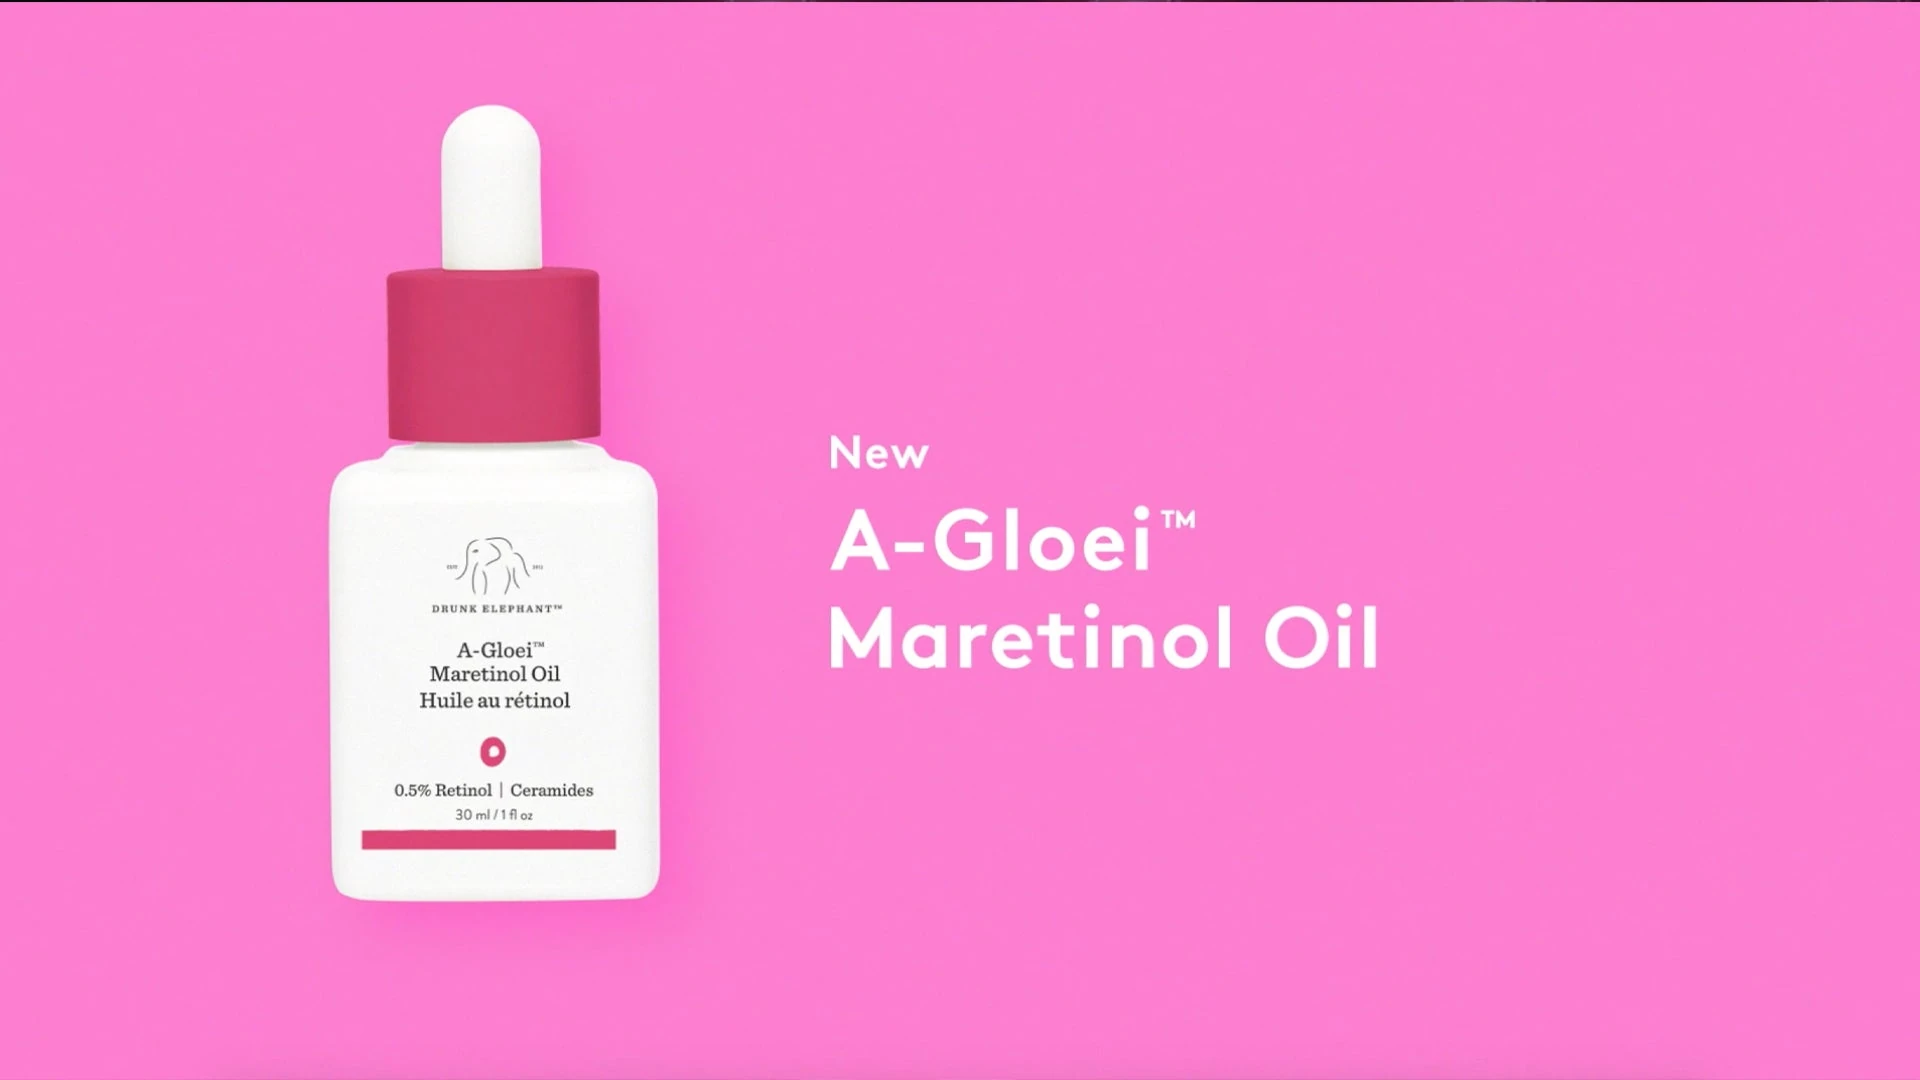 Video announcing launch of A-Gloei Maretinol Oil